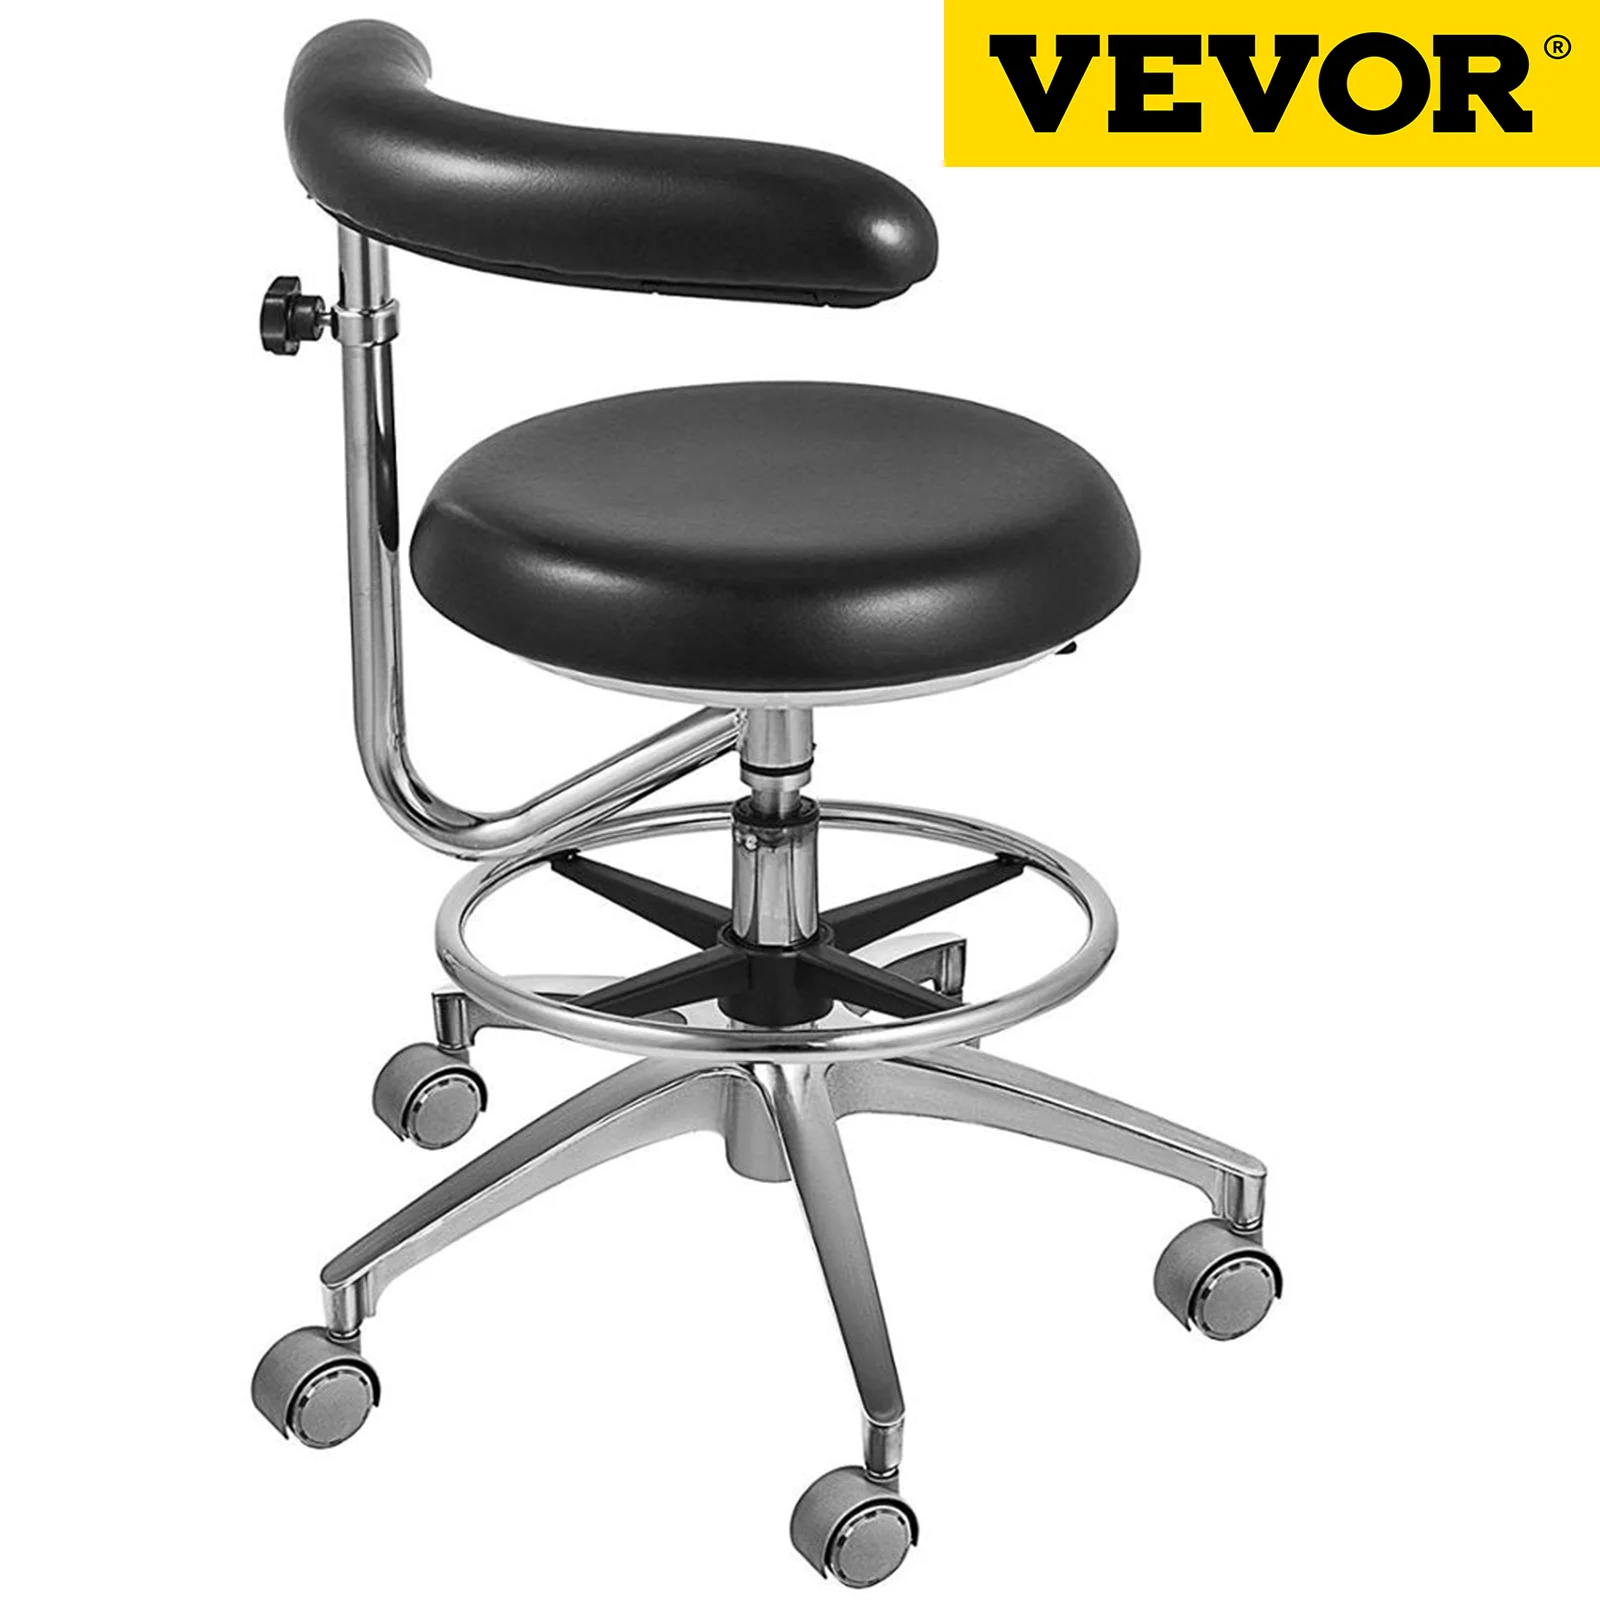 

Медицинский стоматологический стул VEVOR, стоматологическое кресло с подлокотником с вращением на 360 градусов, регулируемое по высоте кресло